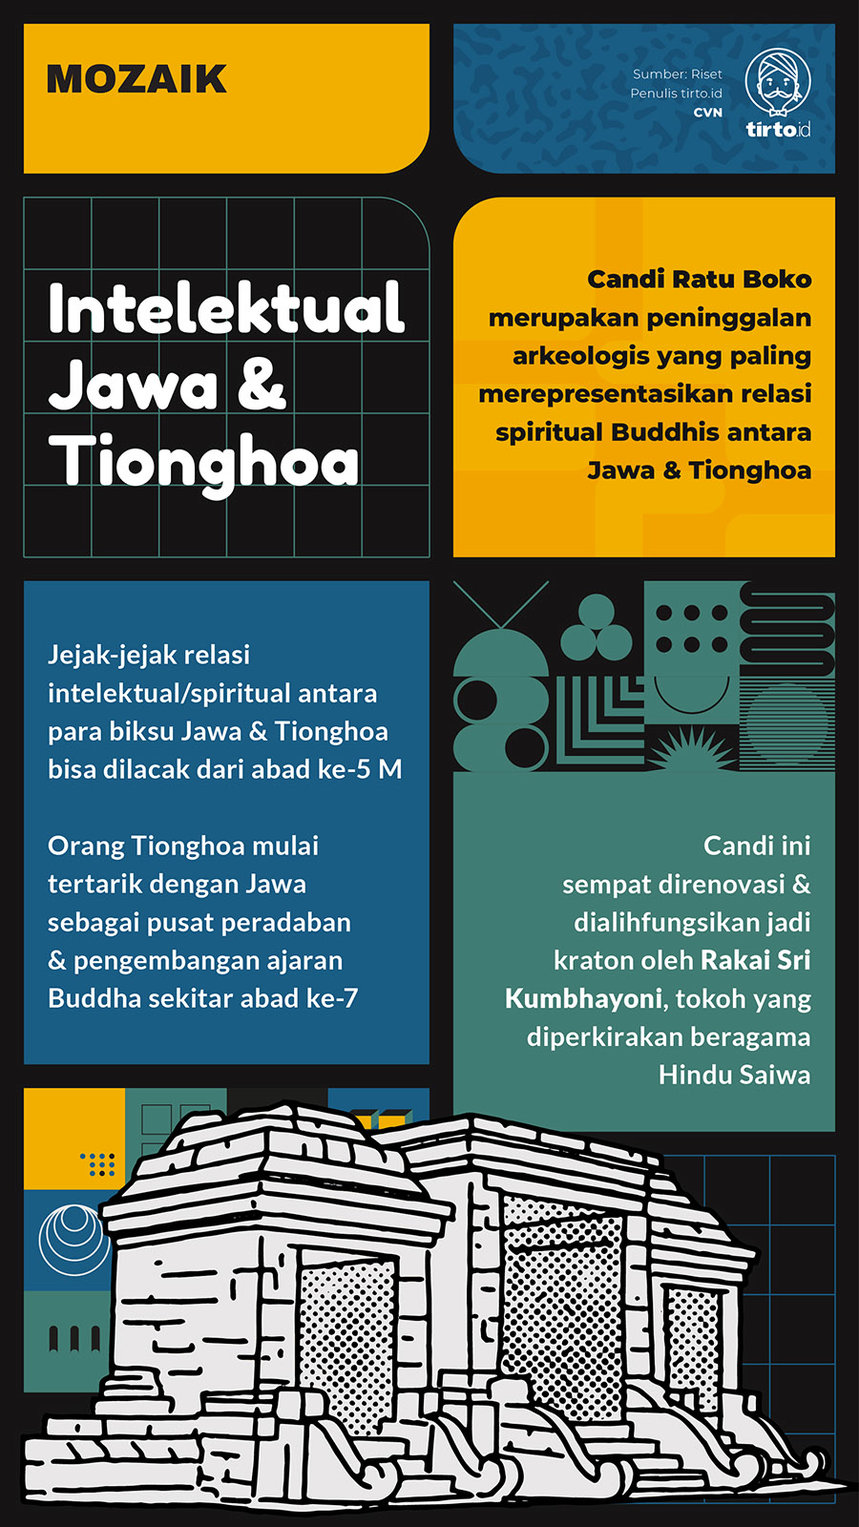 Infografik Mozaik Intelektual Jawa Tiongkok